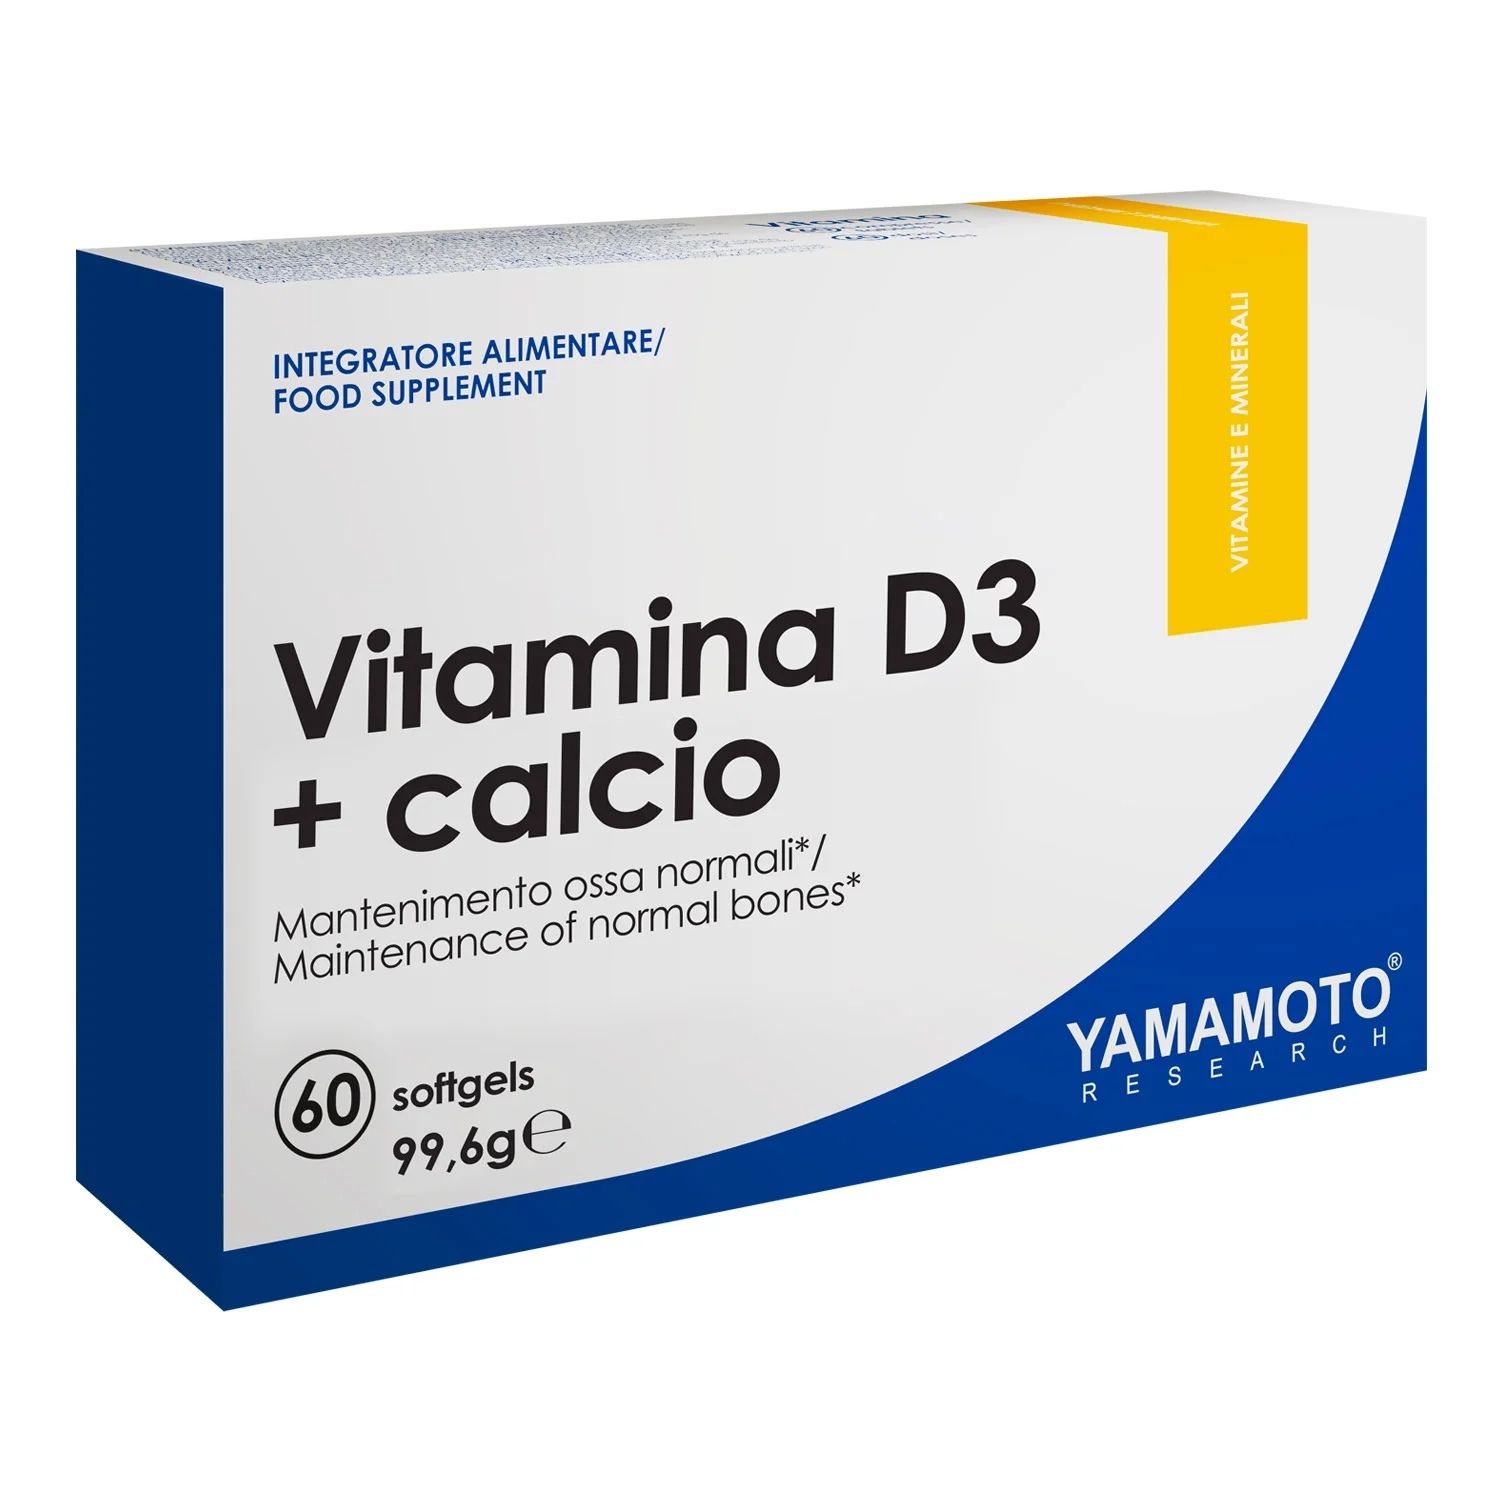 Yamamoto Natural Series Vitamin D3 + Calcium 60 gel capsules